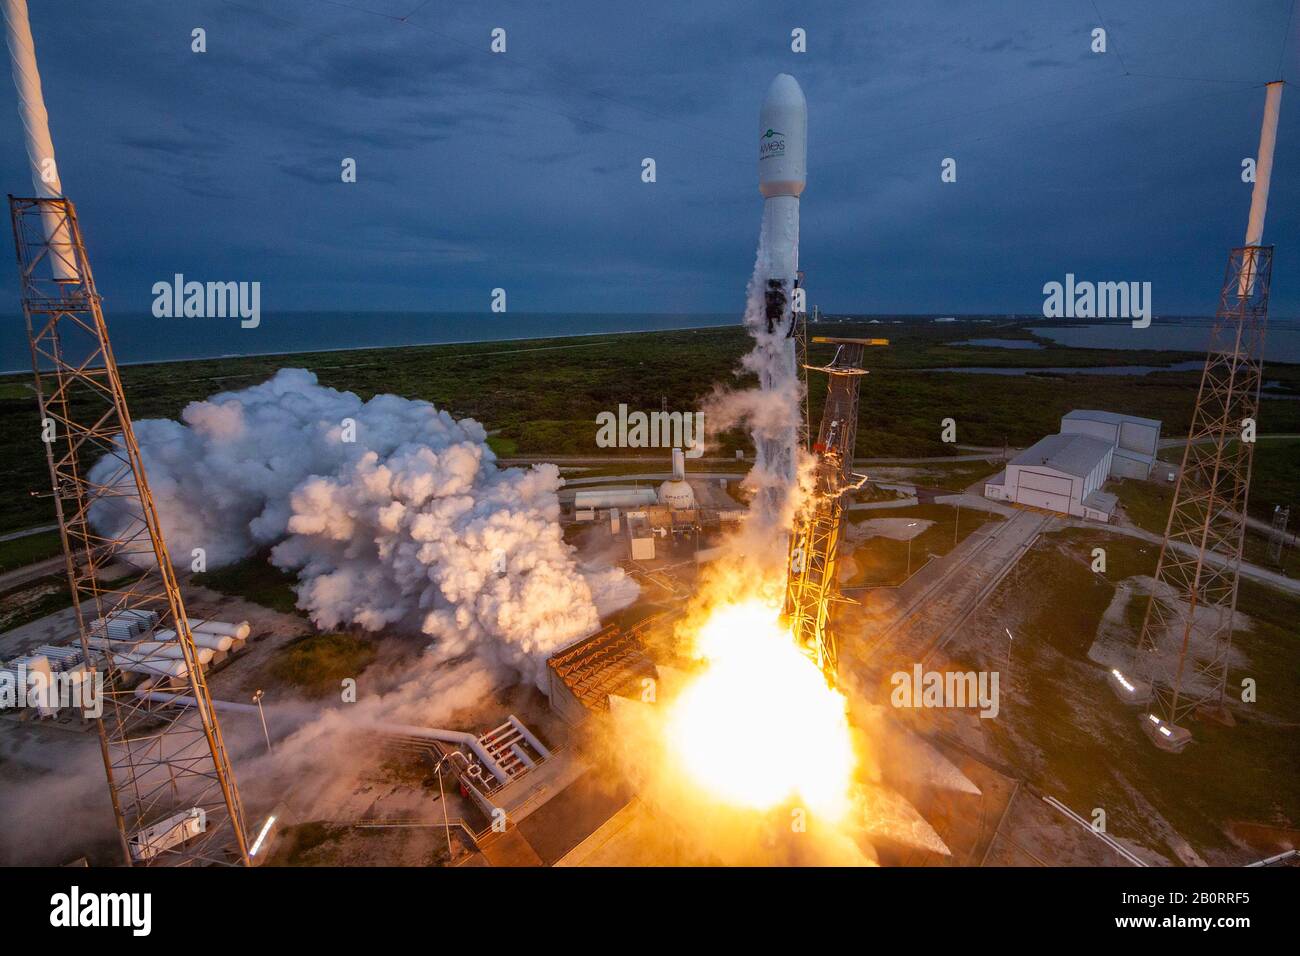 Cabo CAÑAVERAL, EE.UU. - 06 de agosto de 2019 - un cohete SpaceX Falcon 9 se lanza al espacio con el satélite AMOS-17 desde Cabo Cañaveral, Florida, EE.UU. El Foto de stock